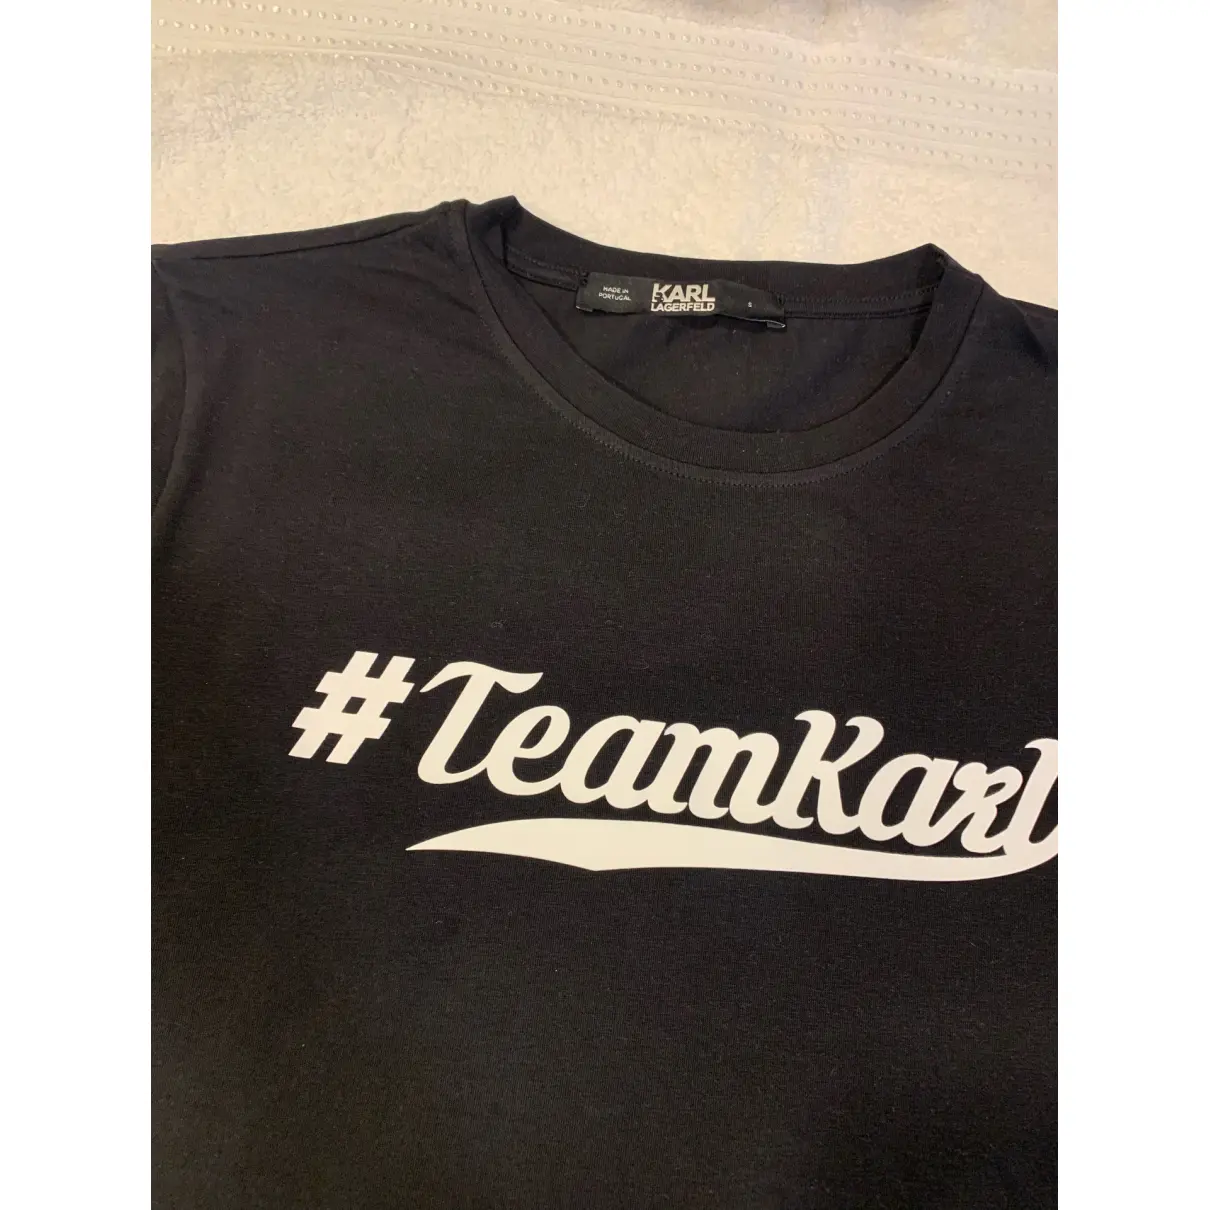 Buy Karl Lagerfeld T-shirt online